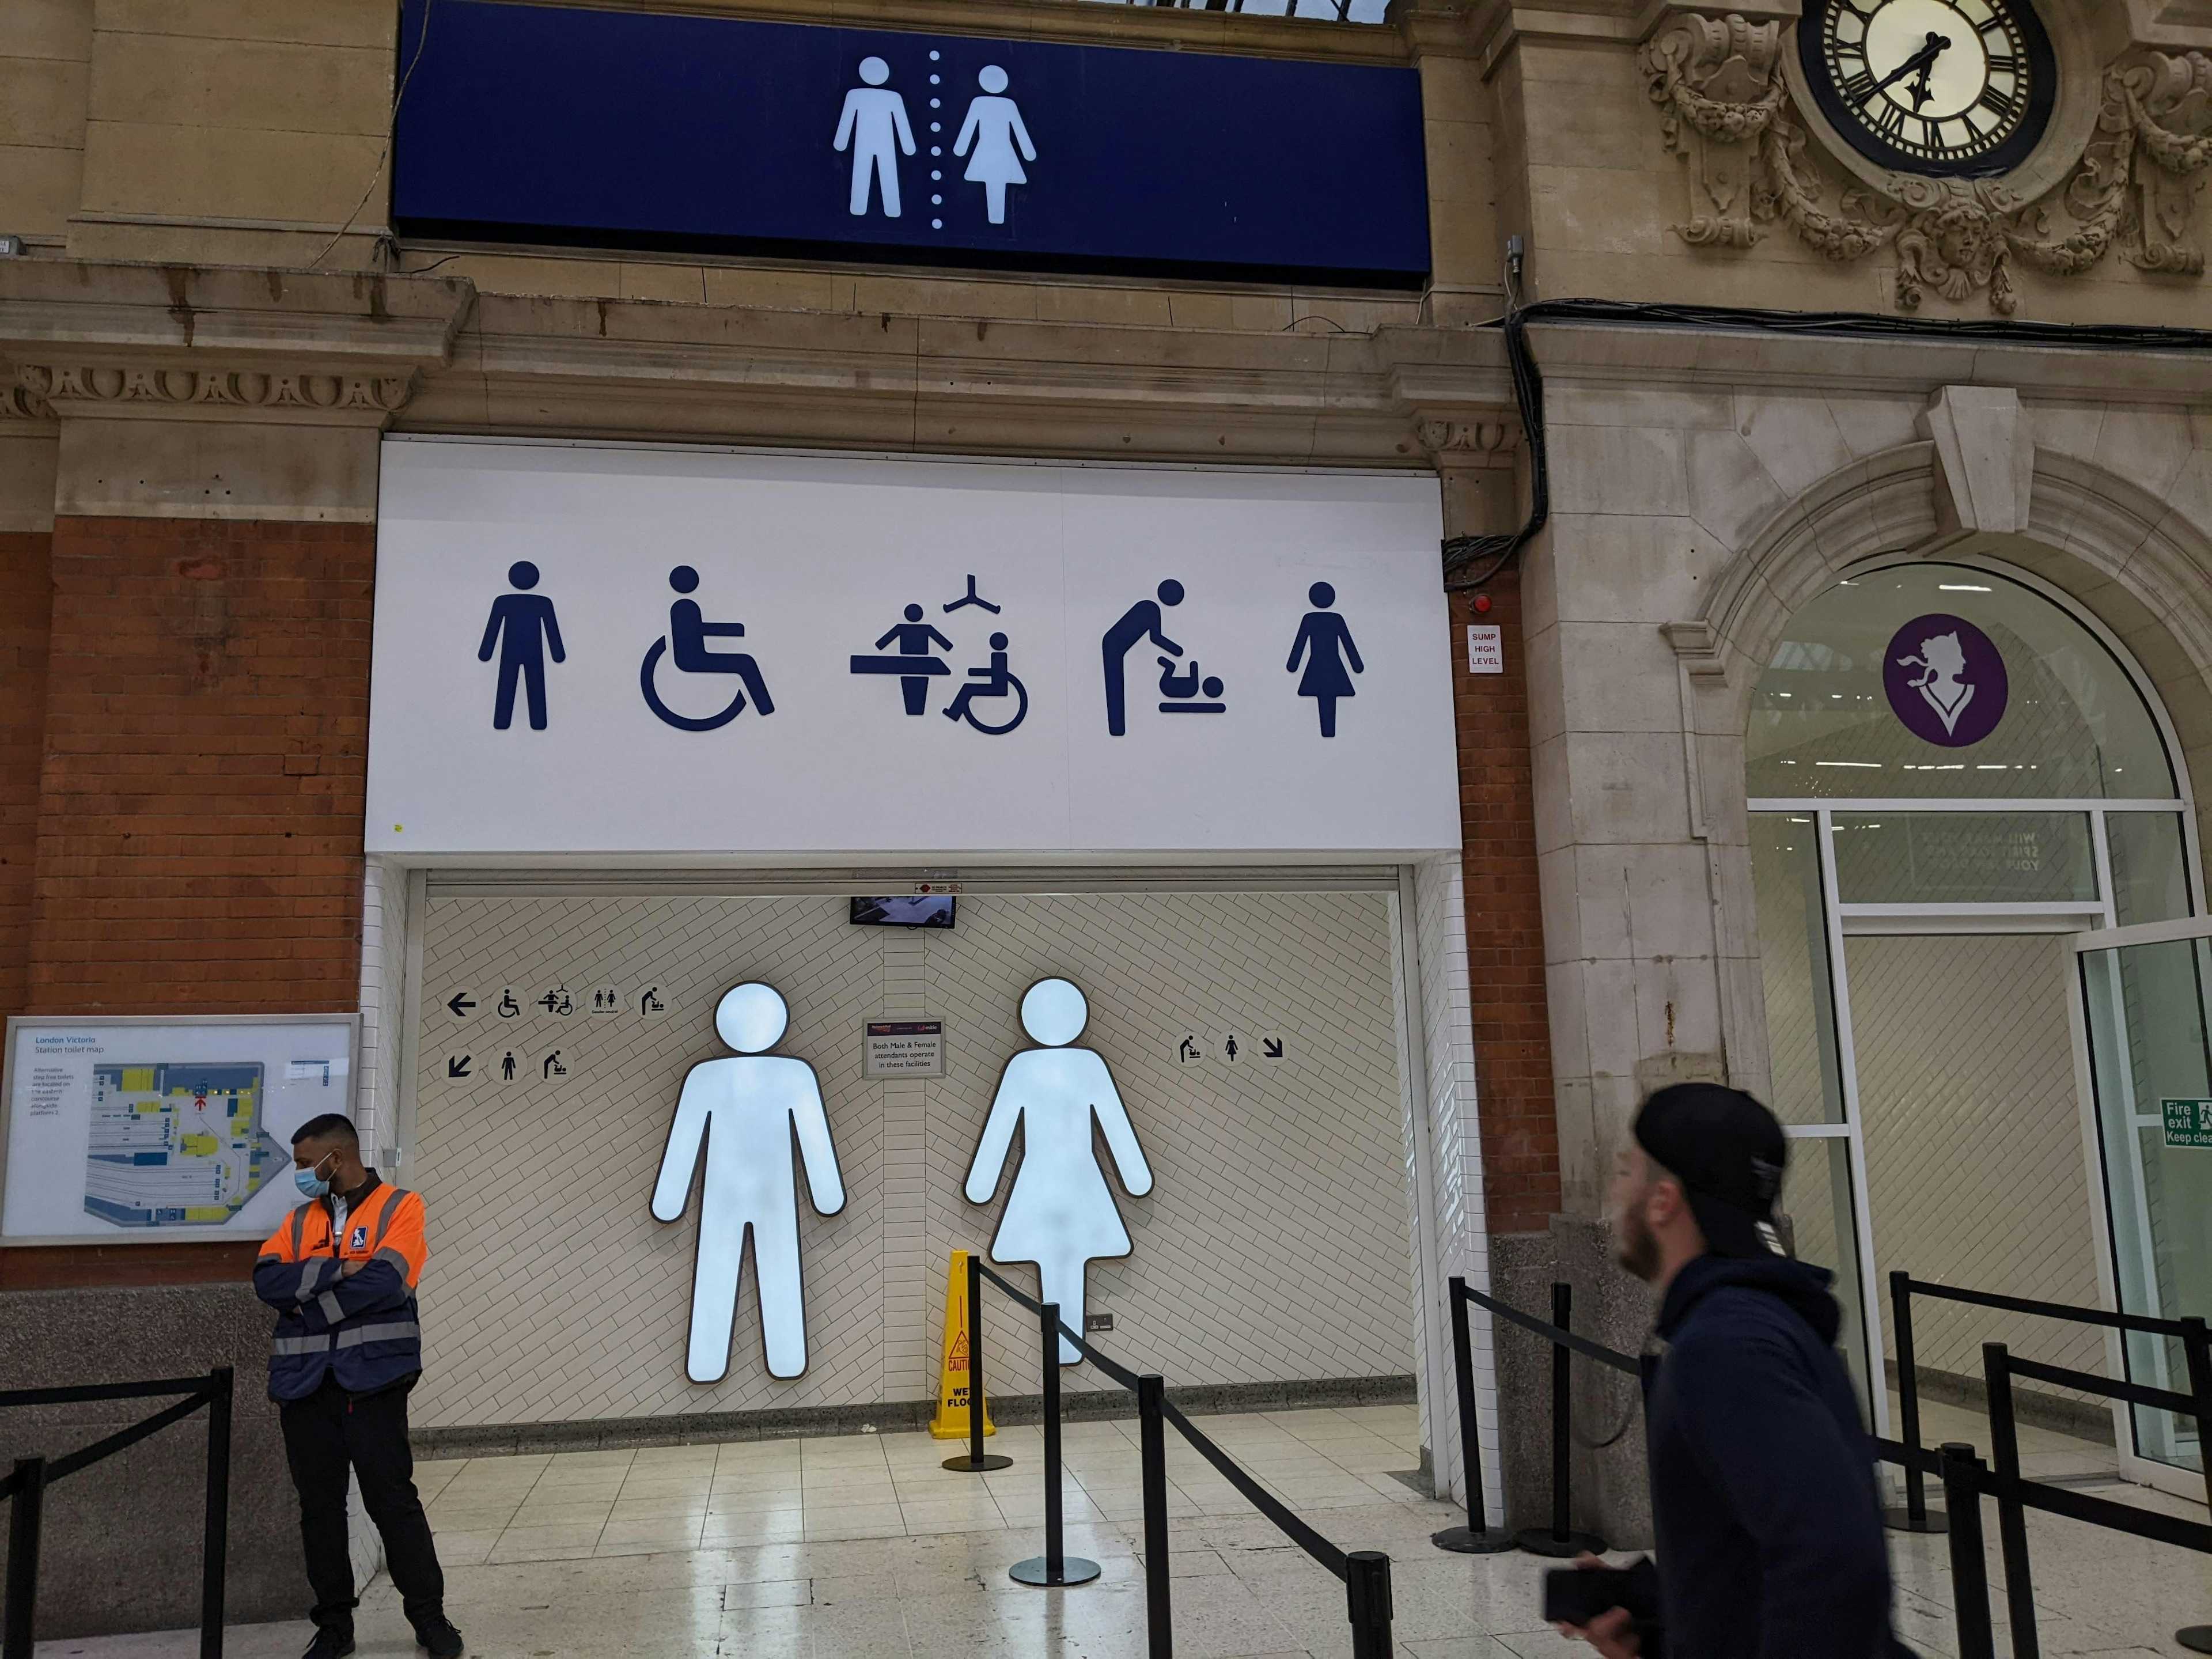 Toilettes publiques à Angleterre : toilettes non mixtes obligatoires dans les nouveaux bâtiments 